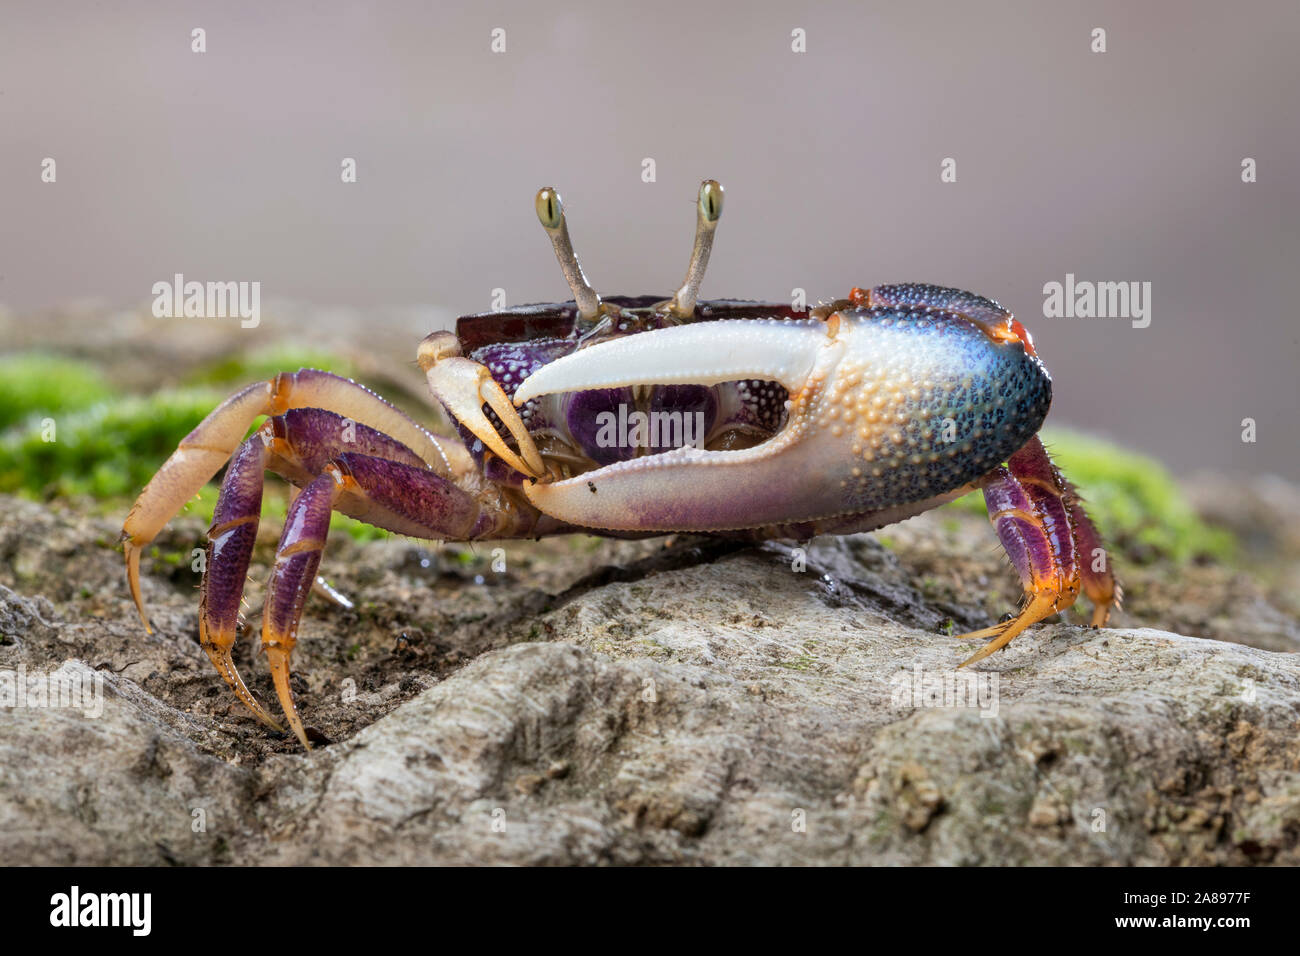 Afruca tangeri,Winkerkrabbe,fiddler crab Stock Photo